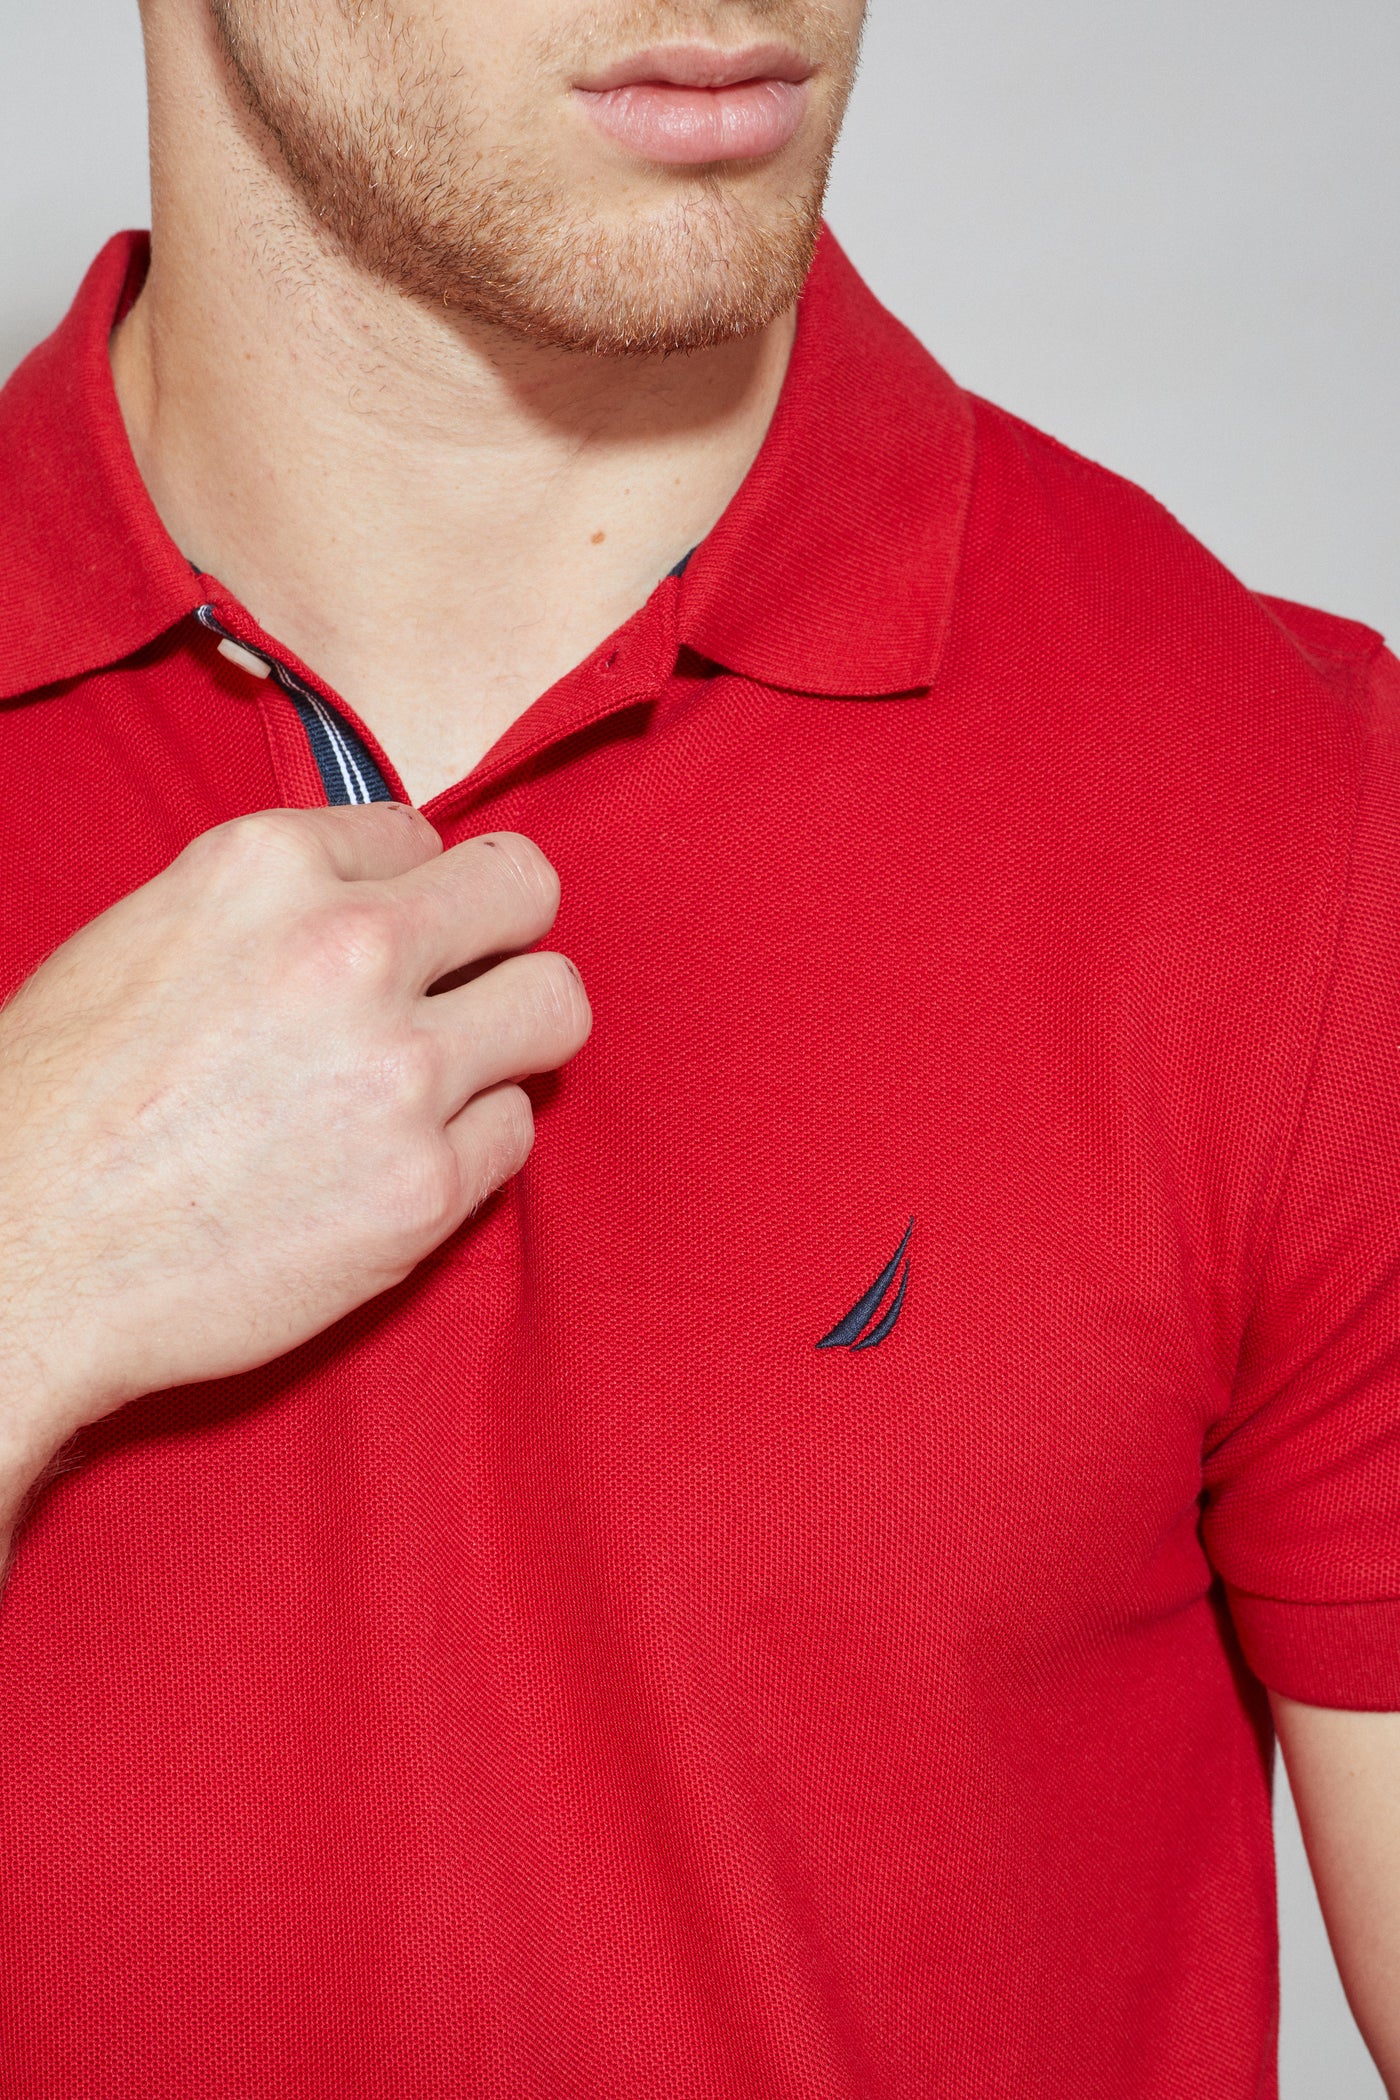 חולצת פולו SLIM FIT שרוול קצר בצבע אדום